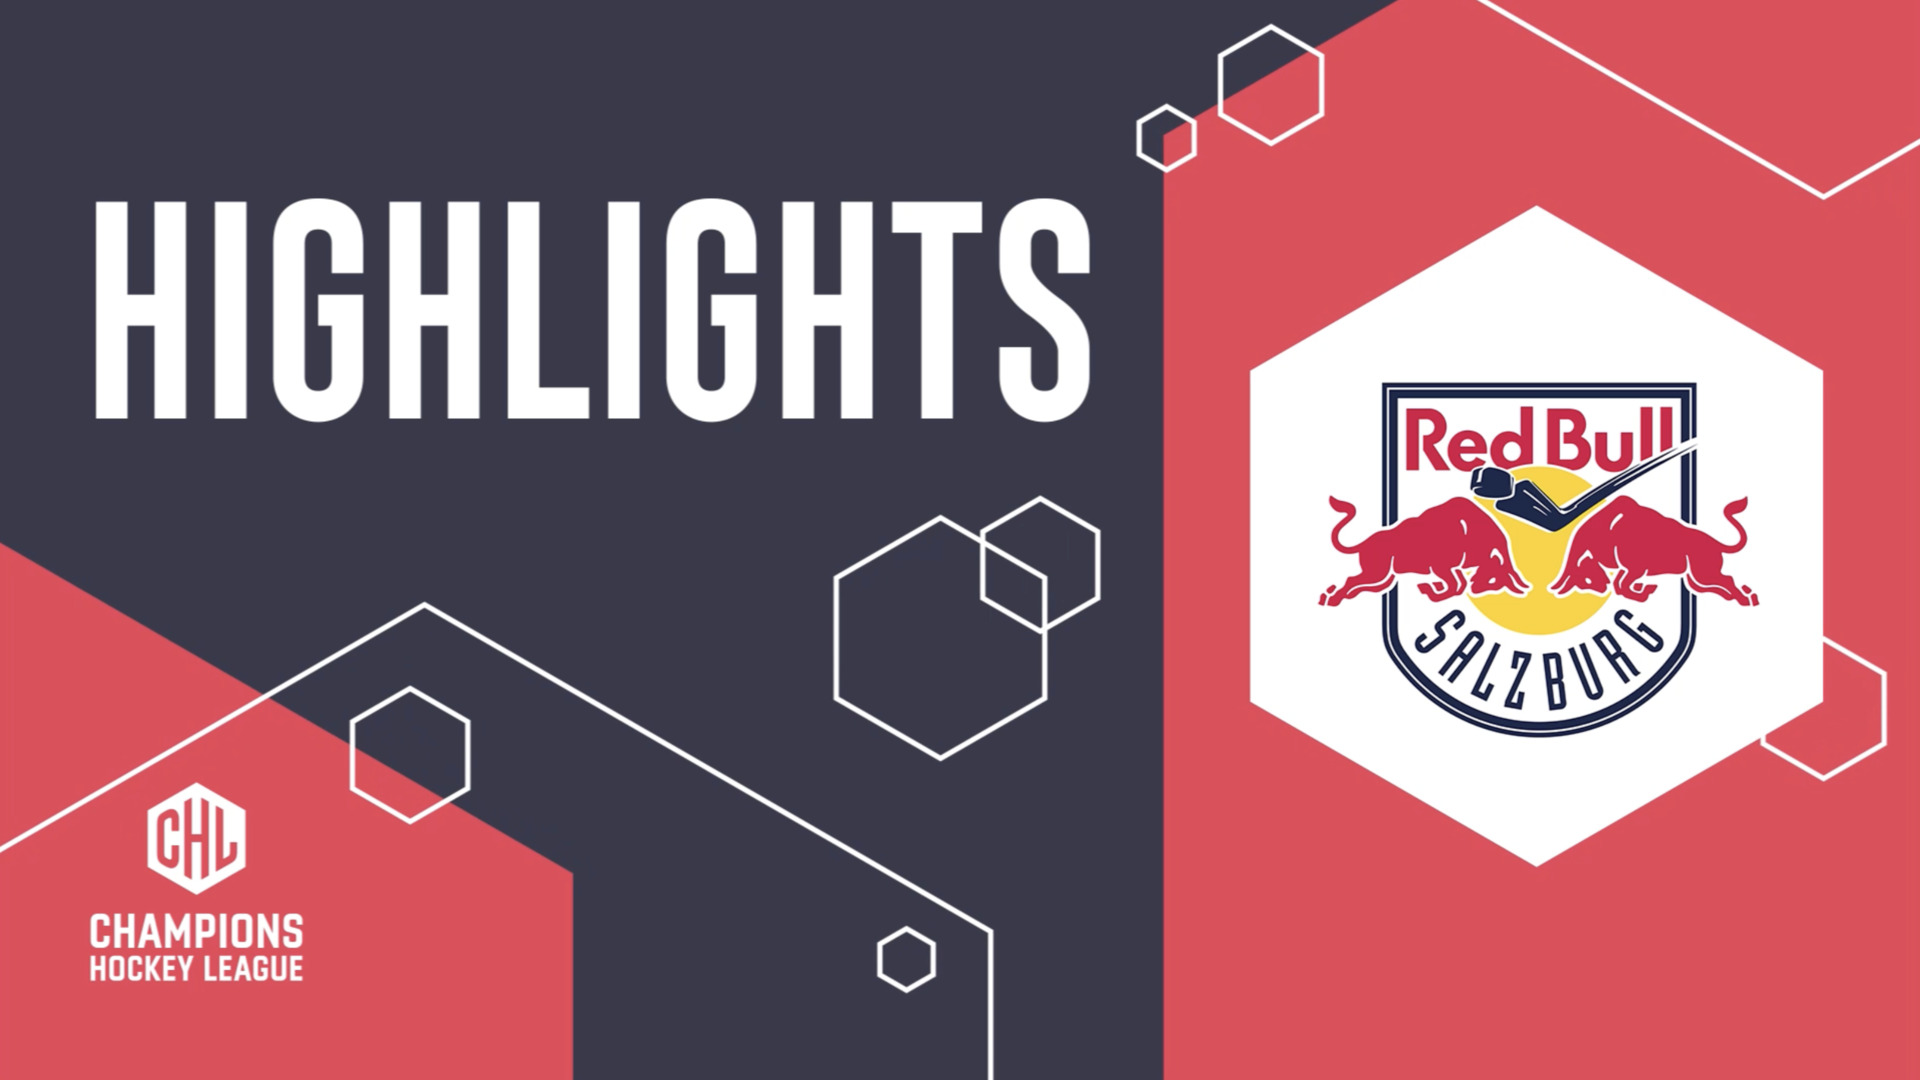 CHL Highlights | Belfast Giants vs. Red Bull Salzburg